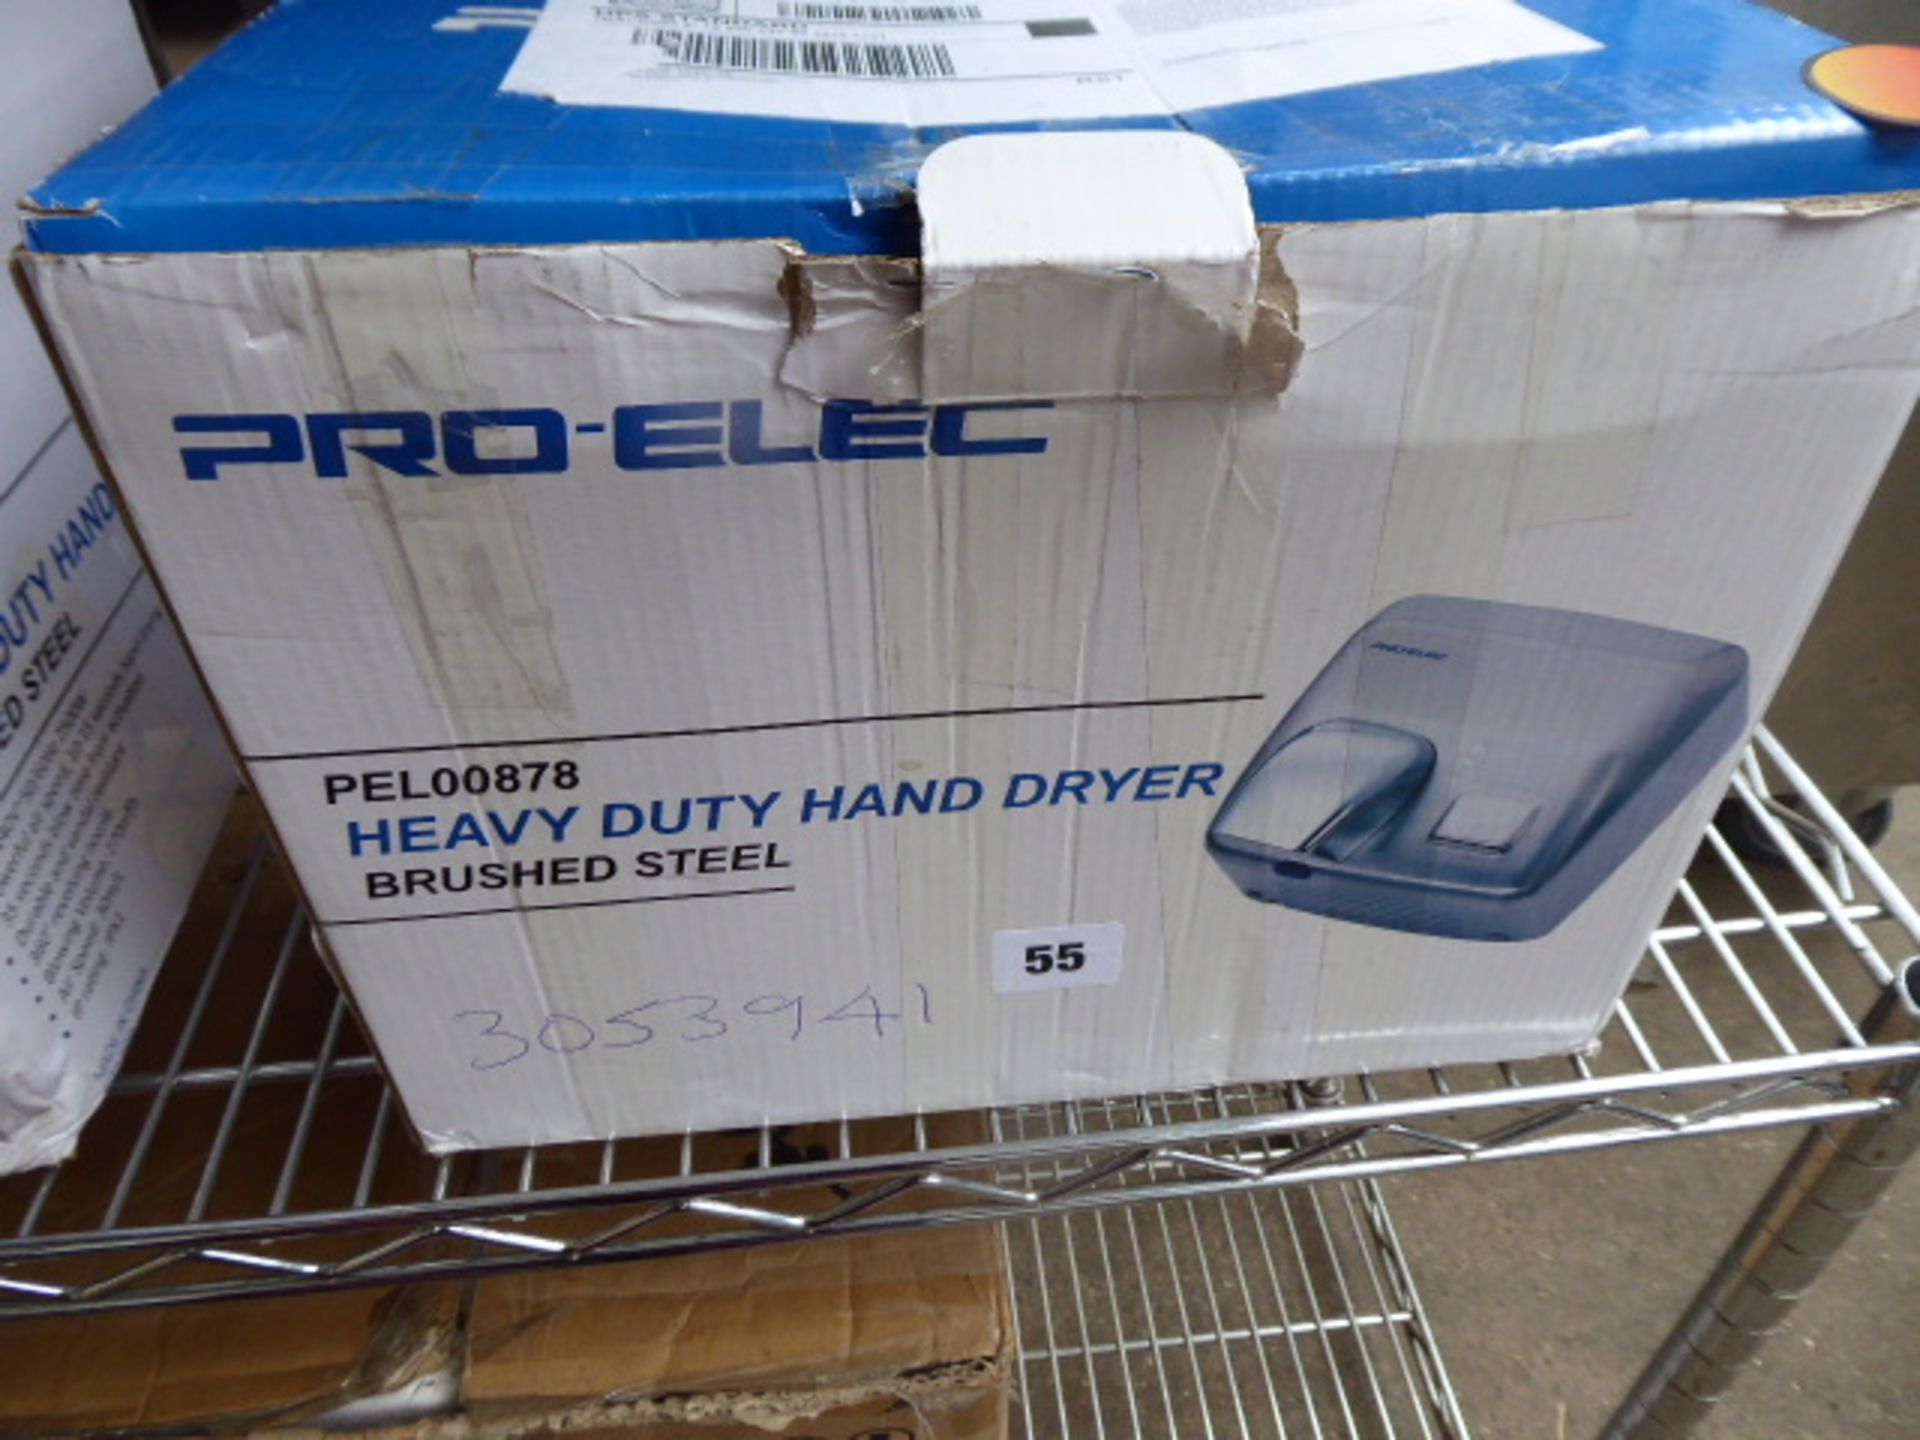 Pro-Elec heavy duty hand dryer in brushed steel